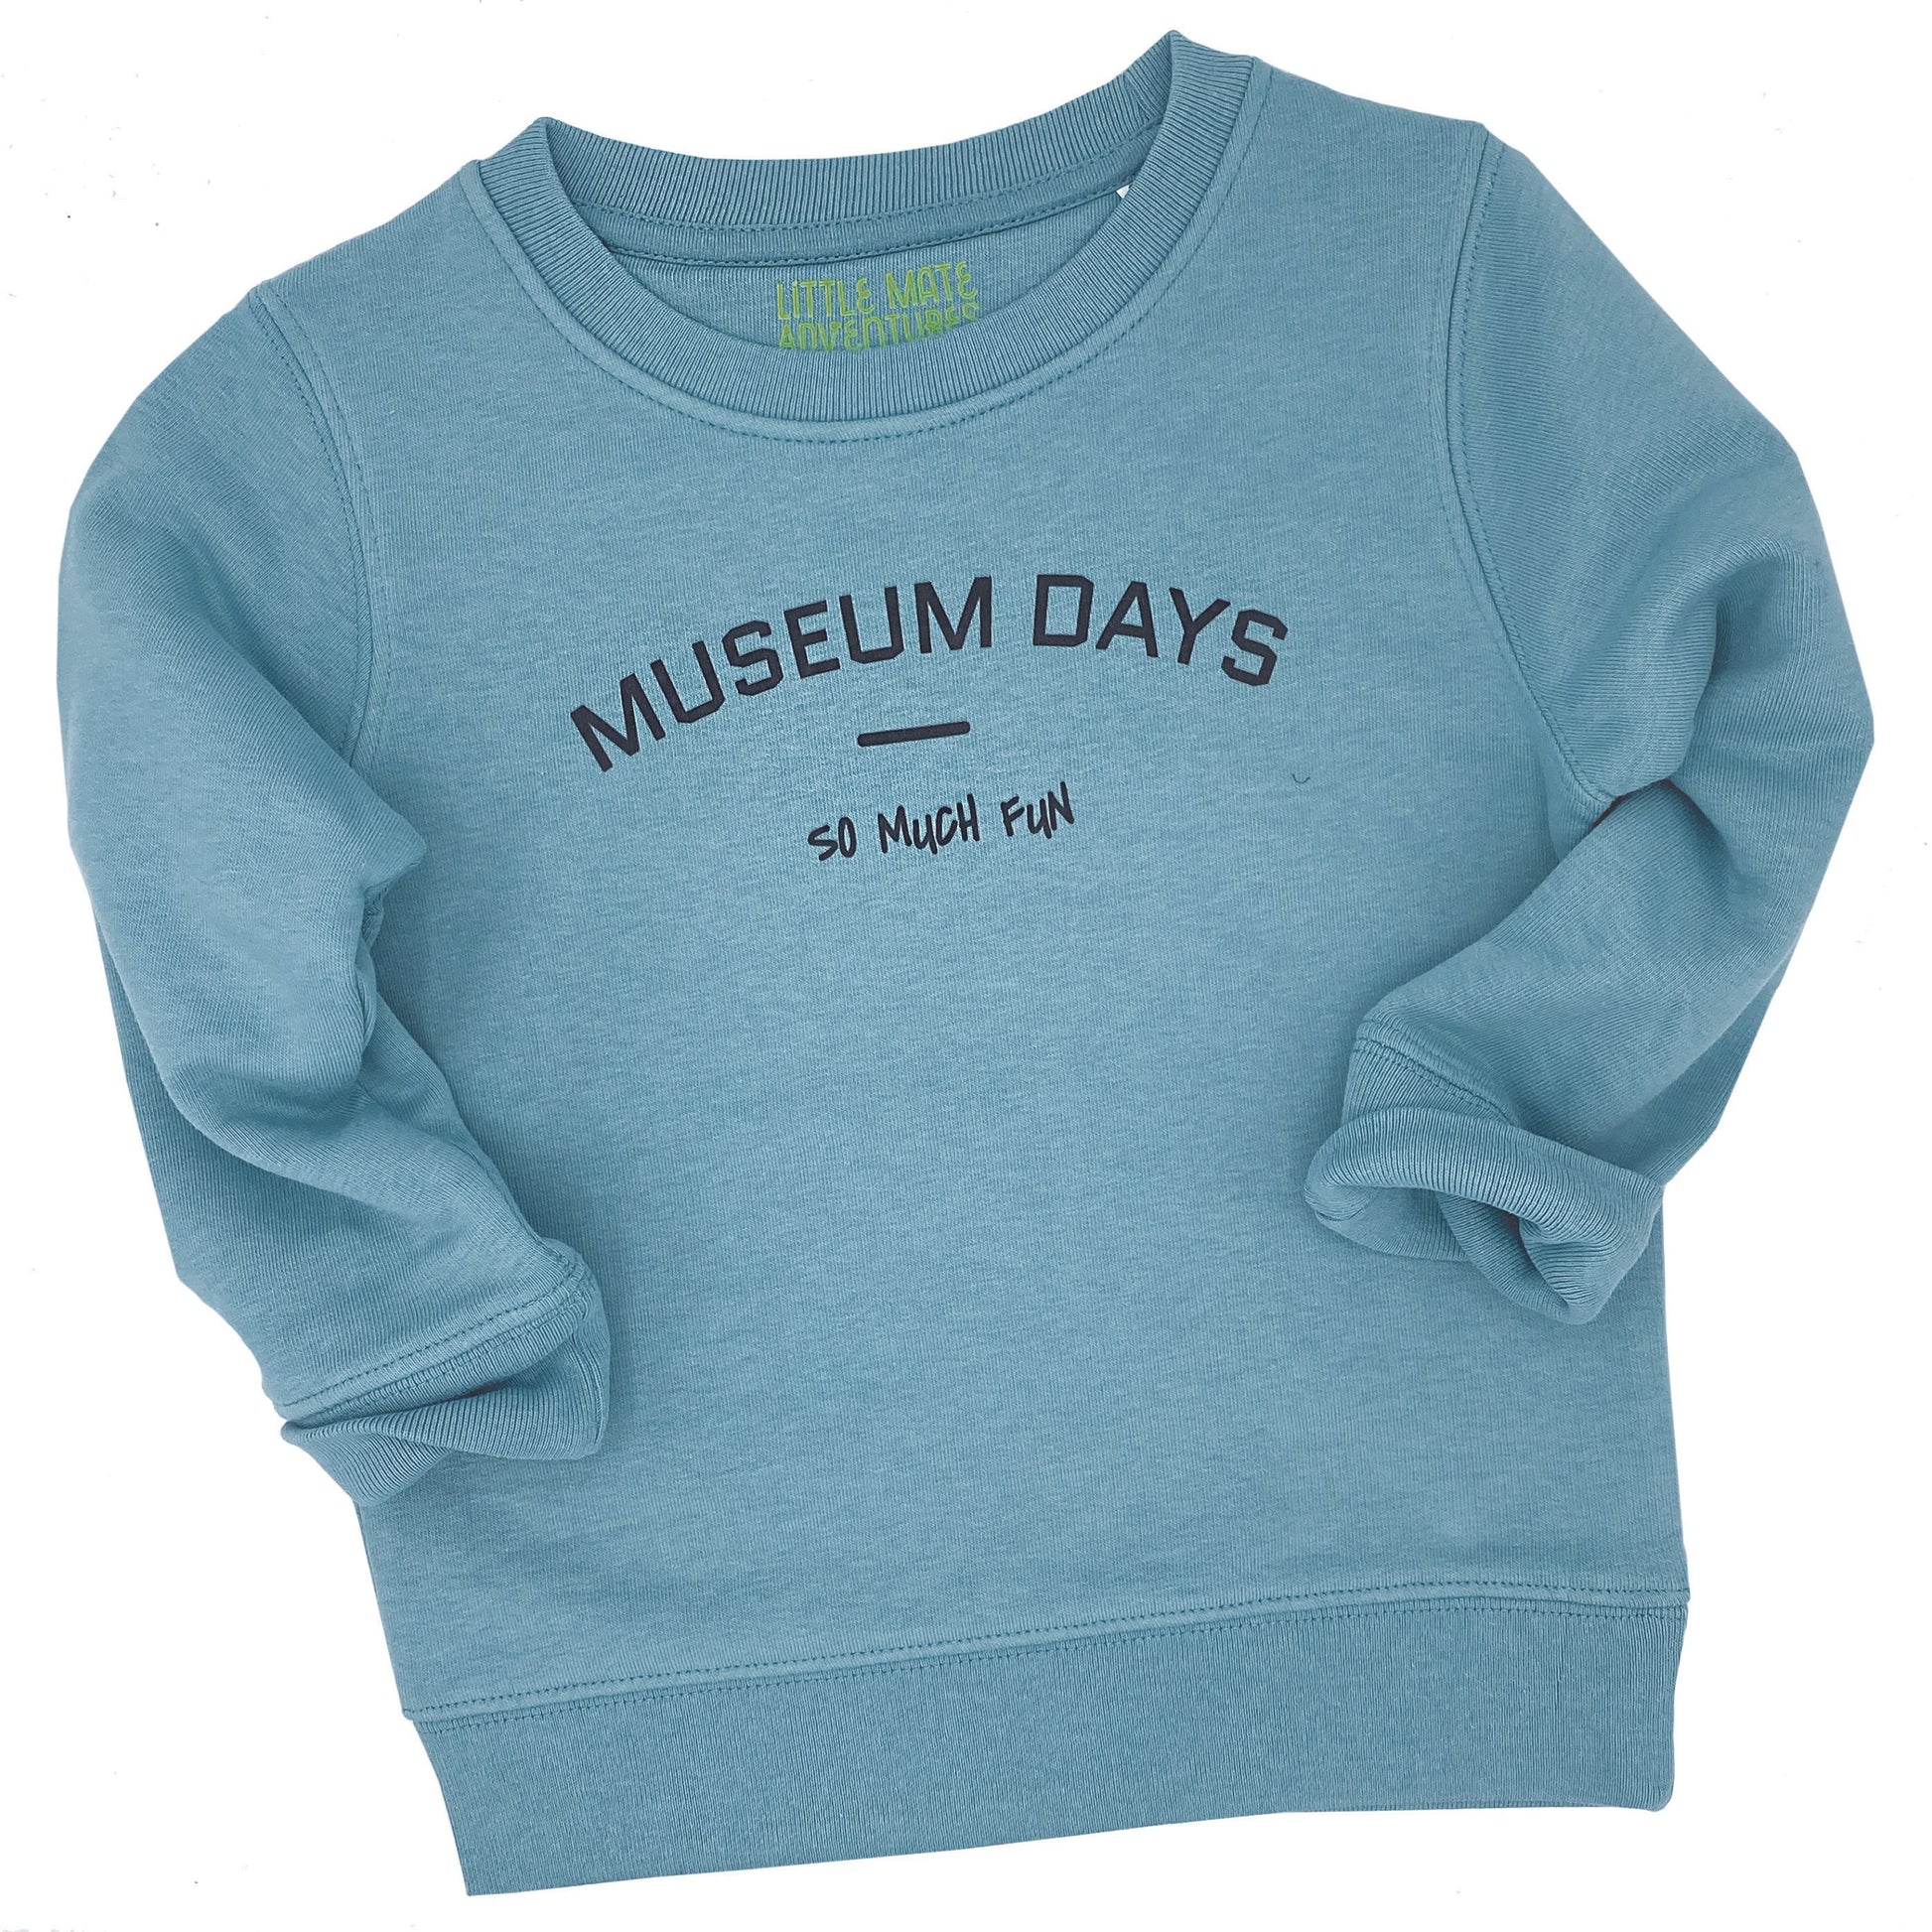 MUSEUM DAYS SO MUCH FUN - Kids Sweatshirt - Little Mate Adventures